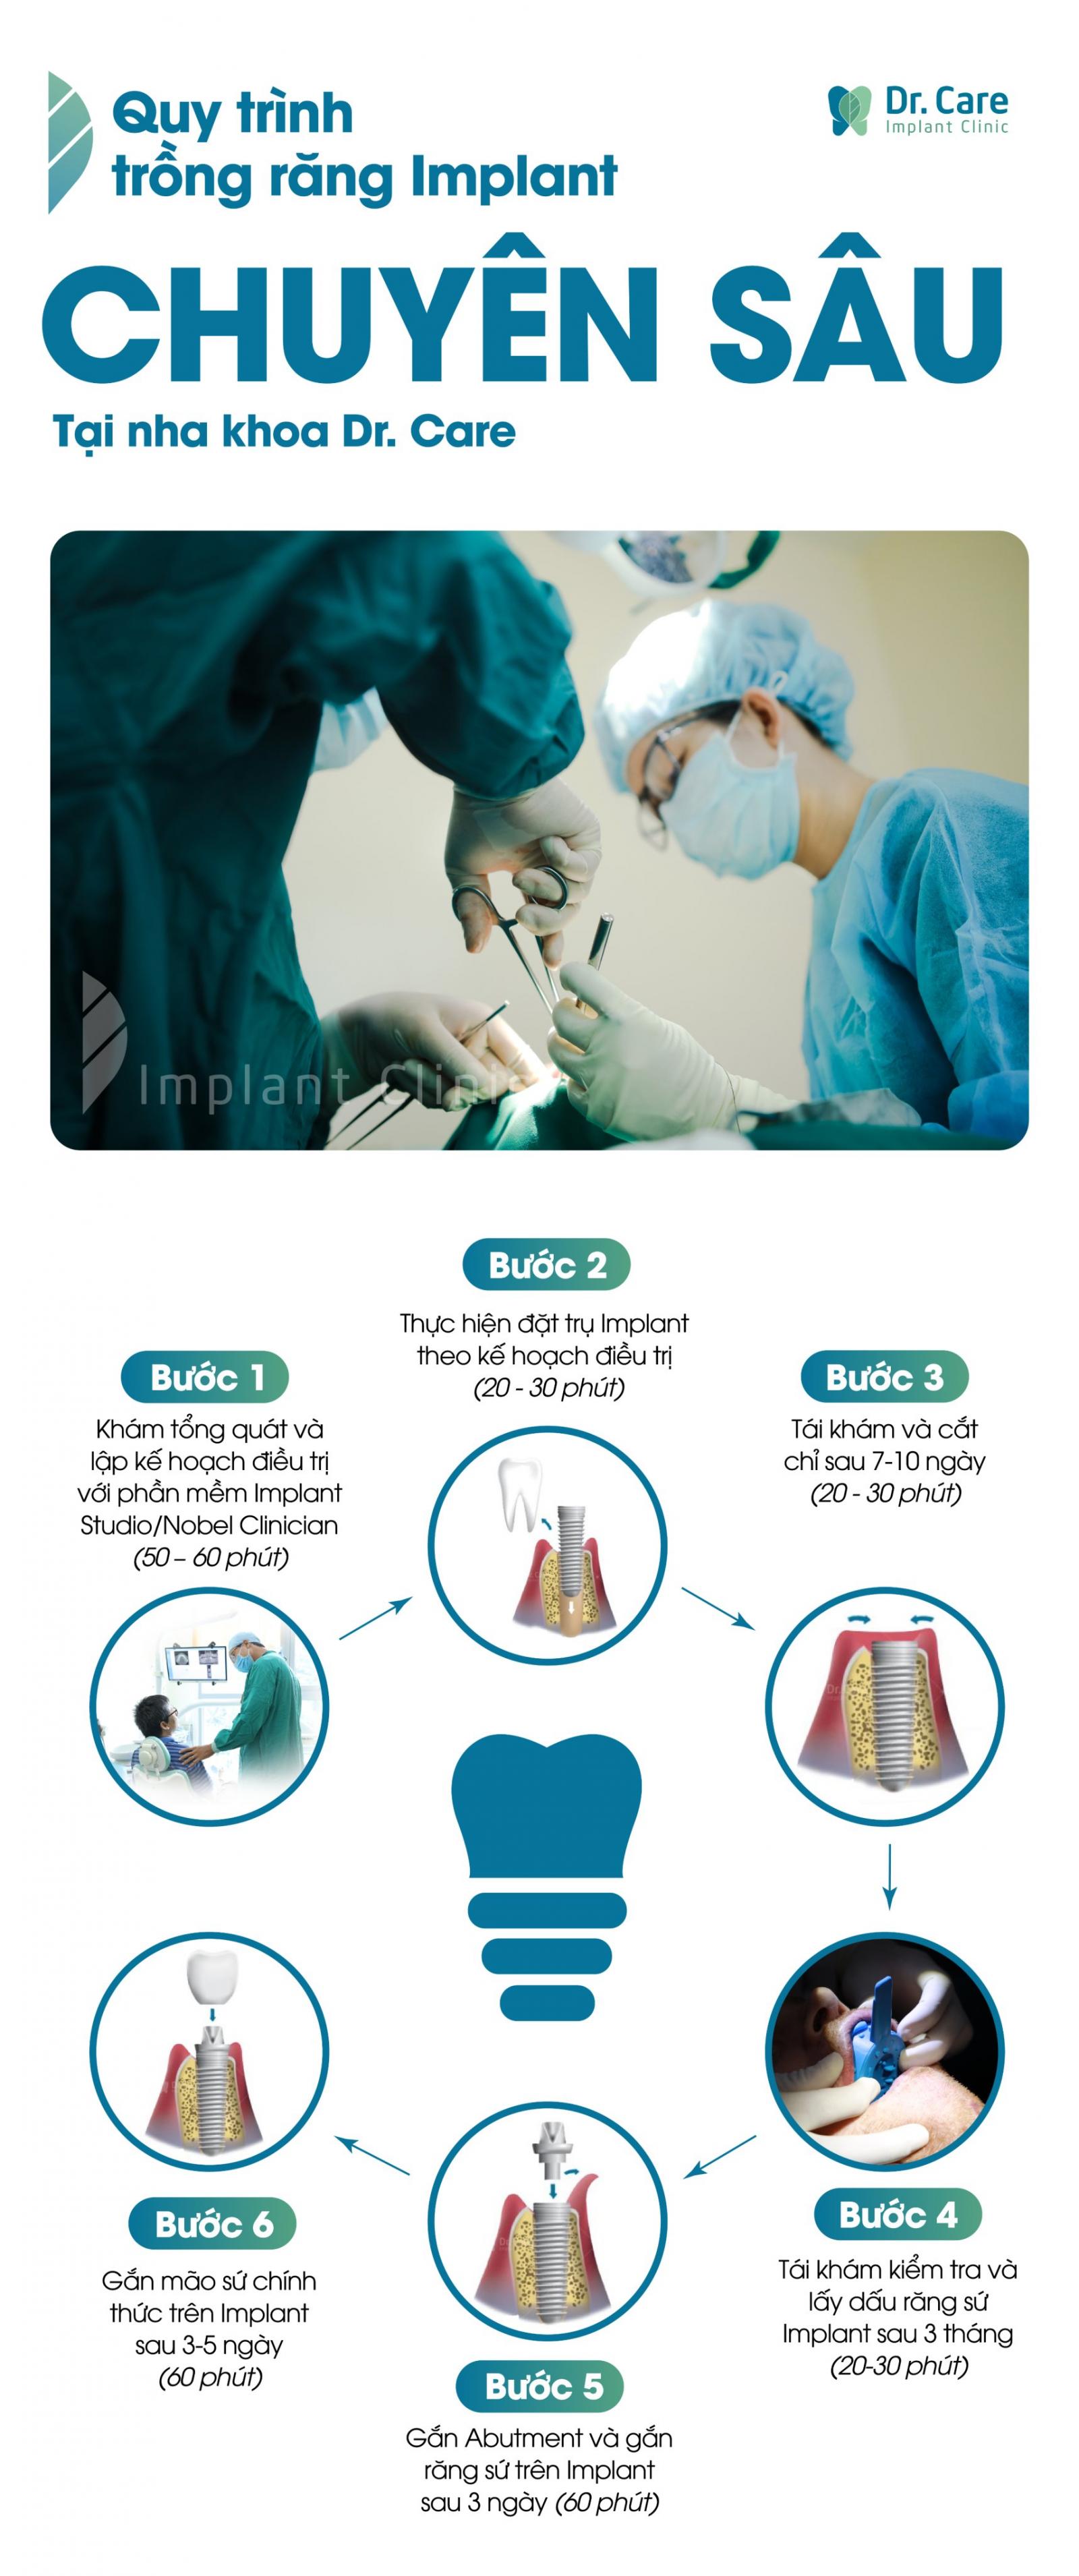 Quy trình cấy ghép Implant chuẩn y khoa tại Dr. Care - Implant Clinic